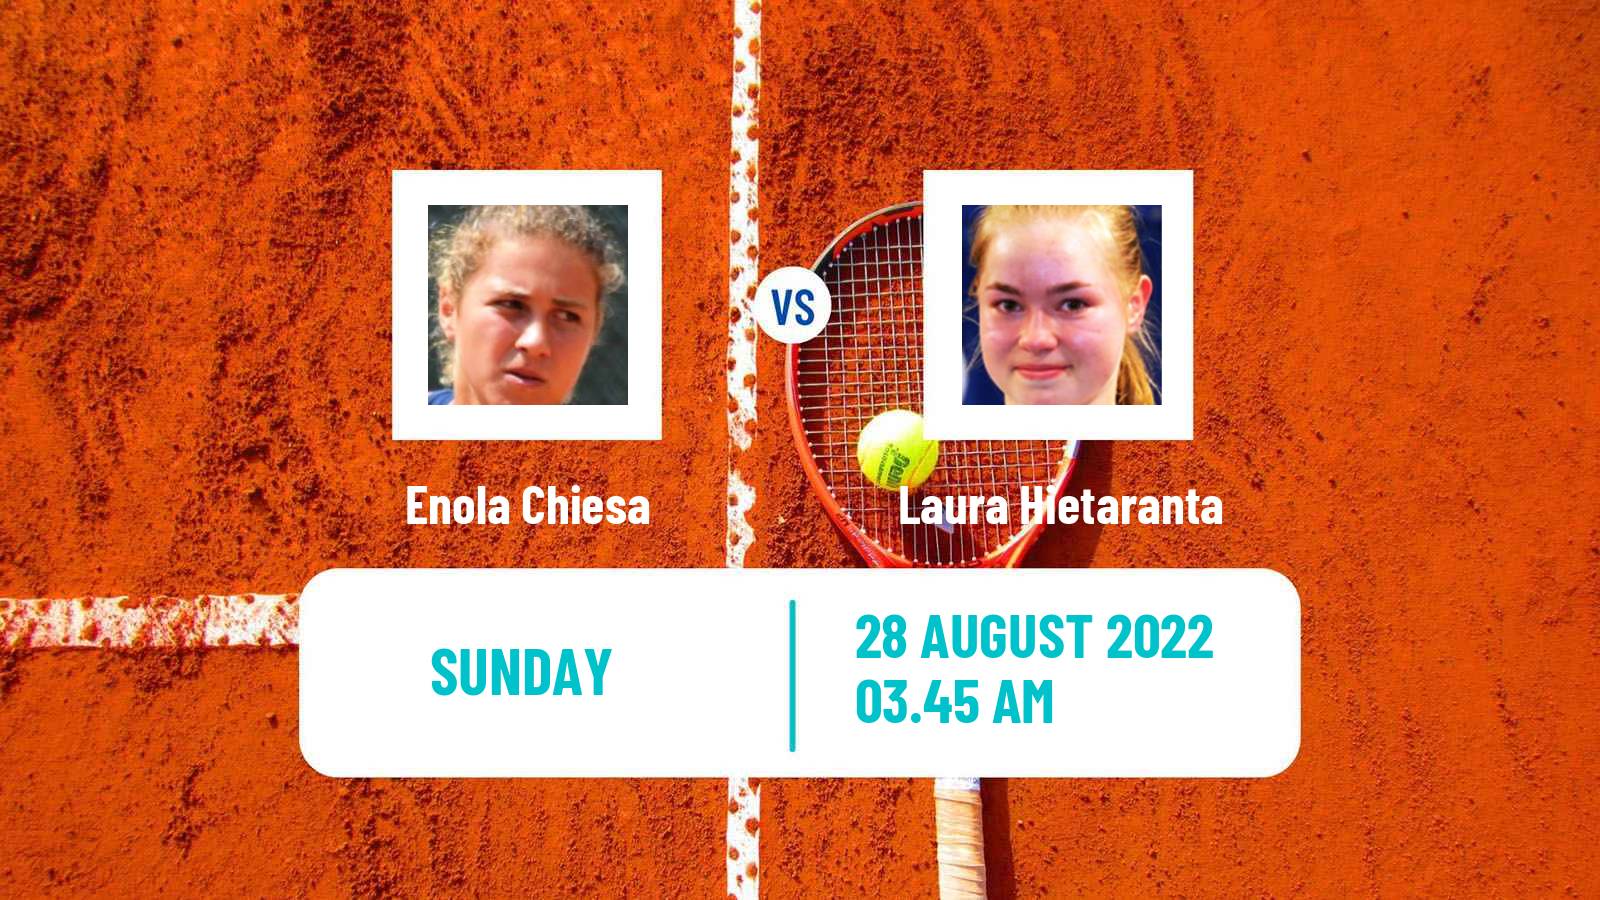 Tennis ITF Tournaments Enola Chiesa - Laura Hietaranta